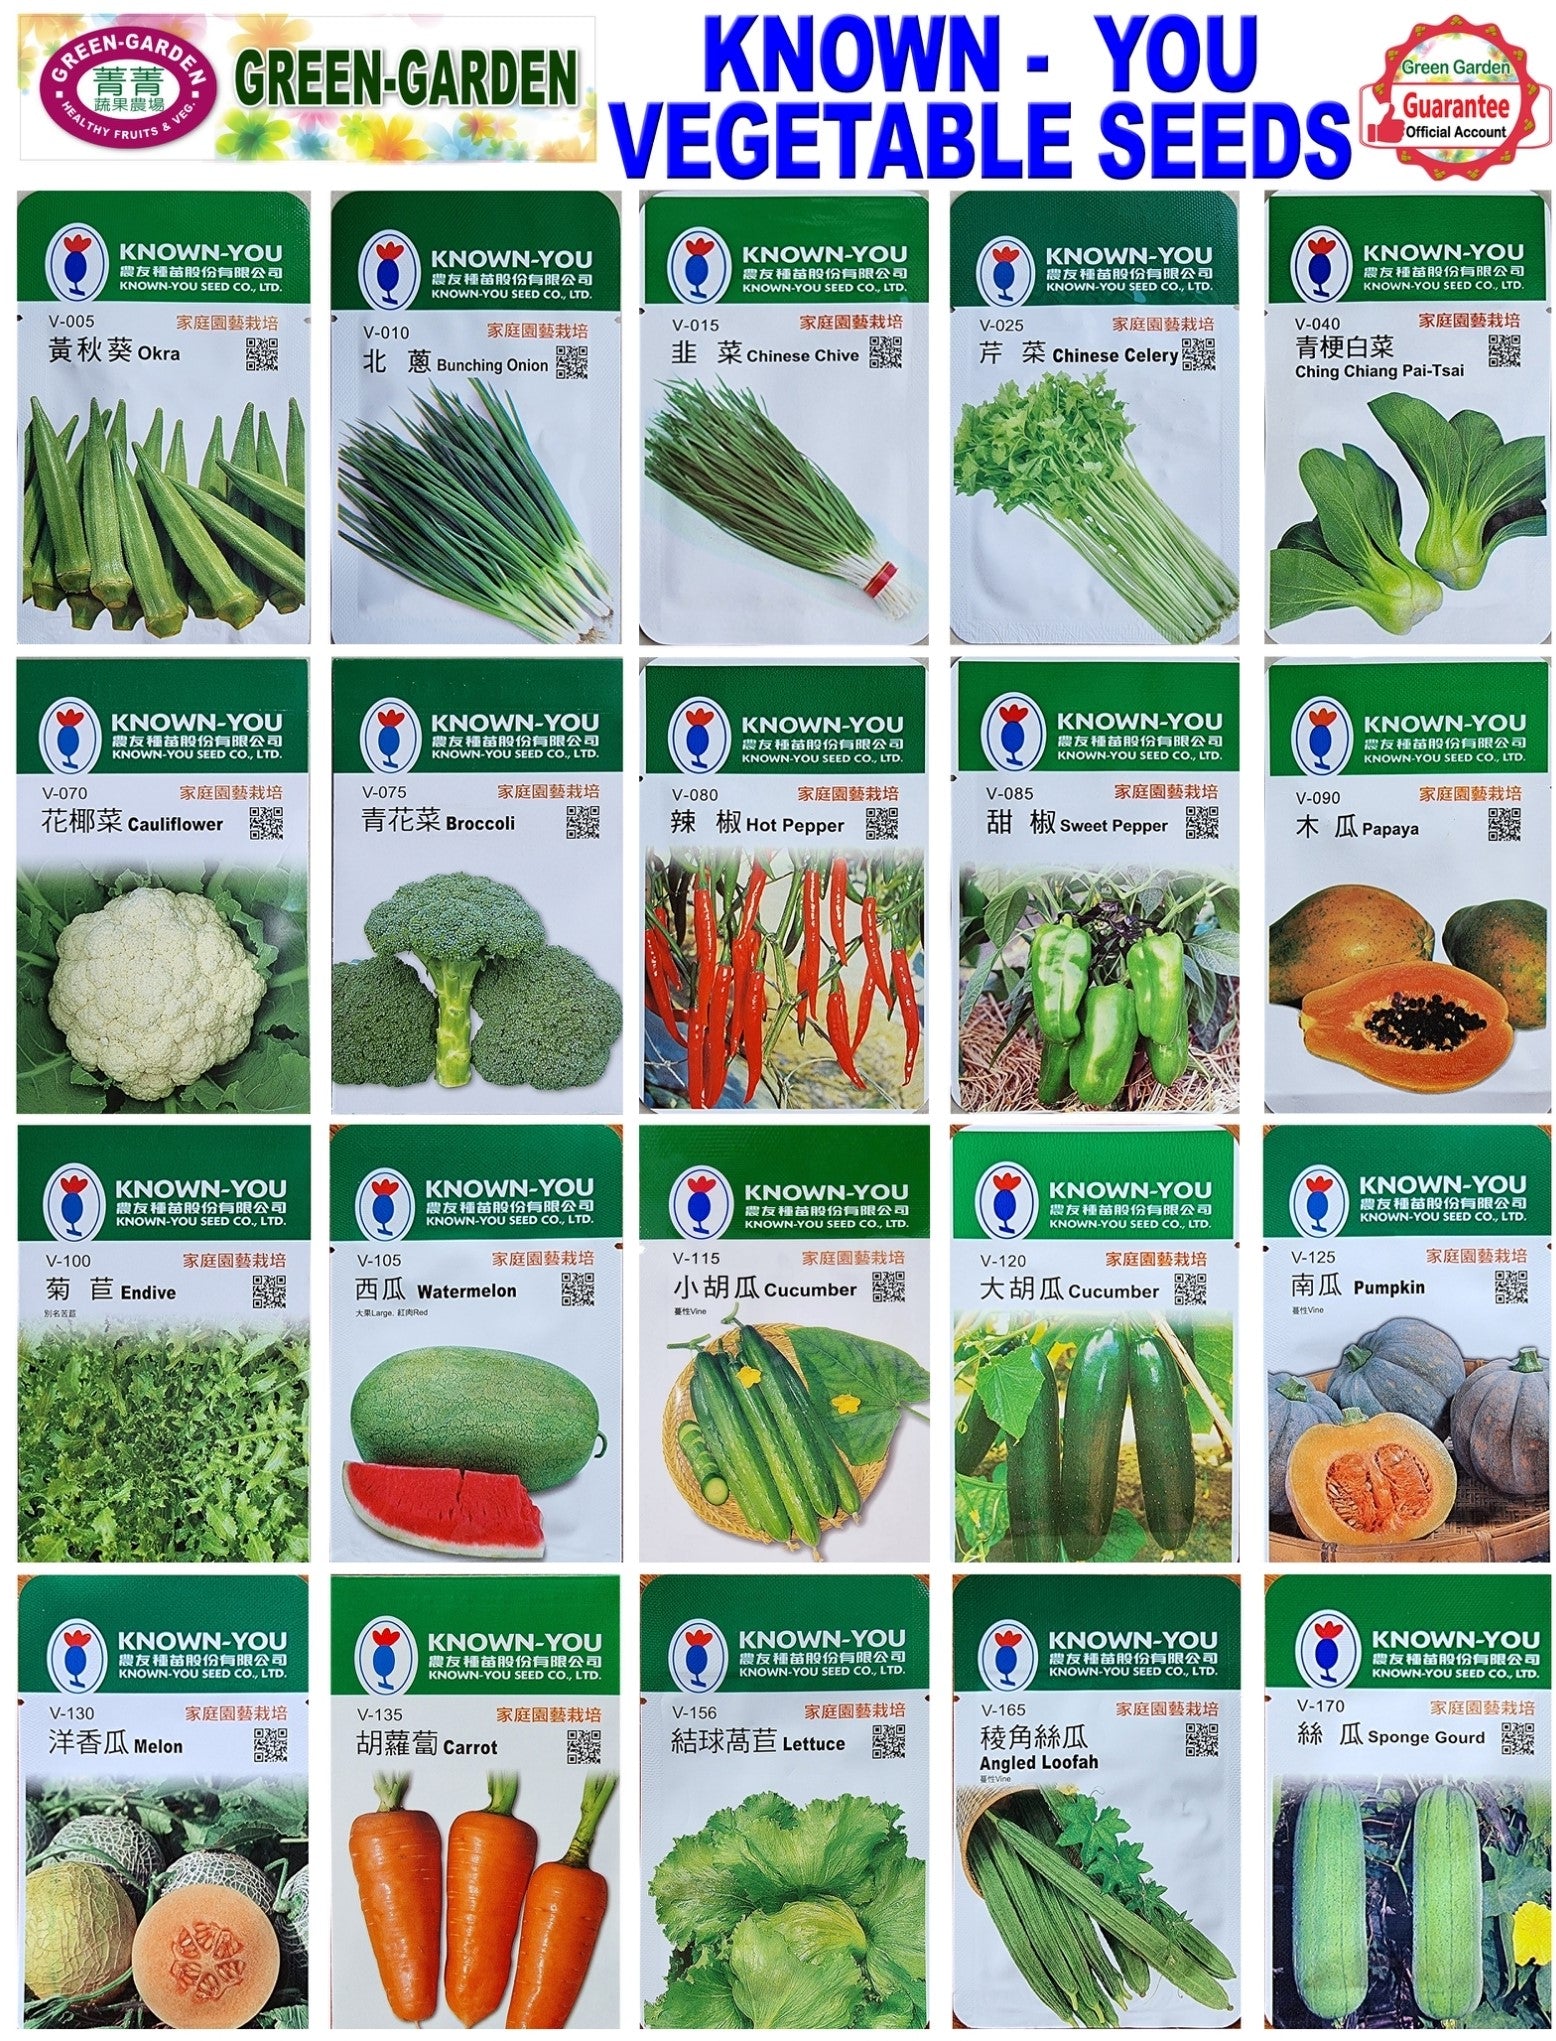 Known You Vegetable Seeds (V-005 Okra)